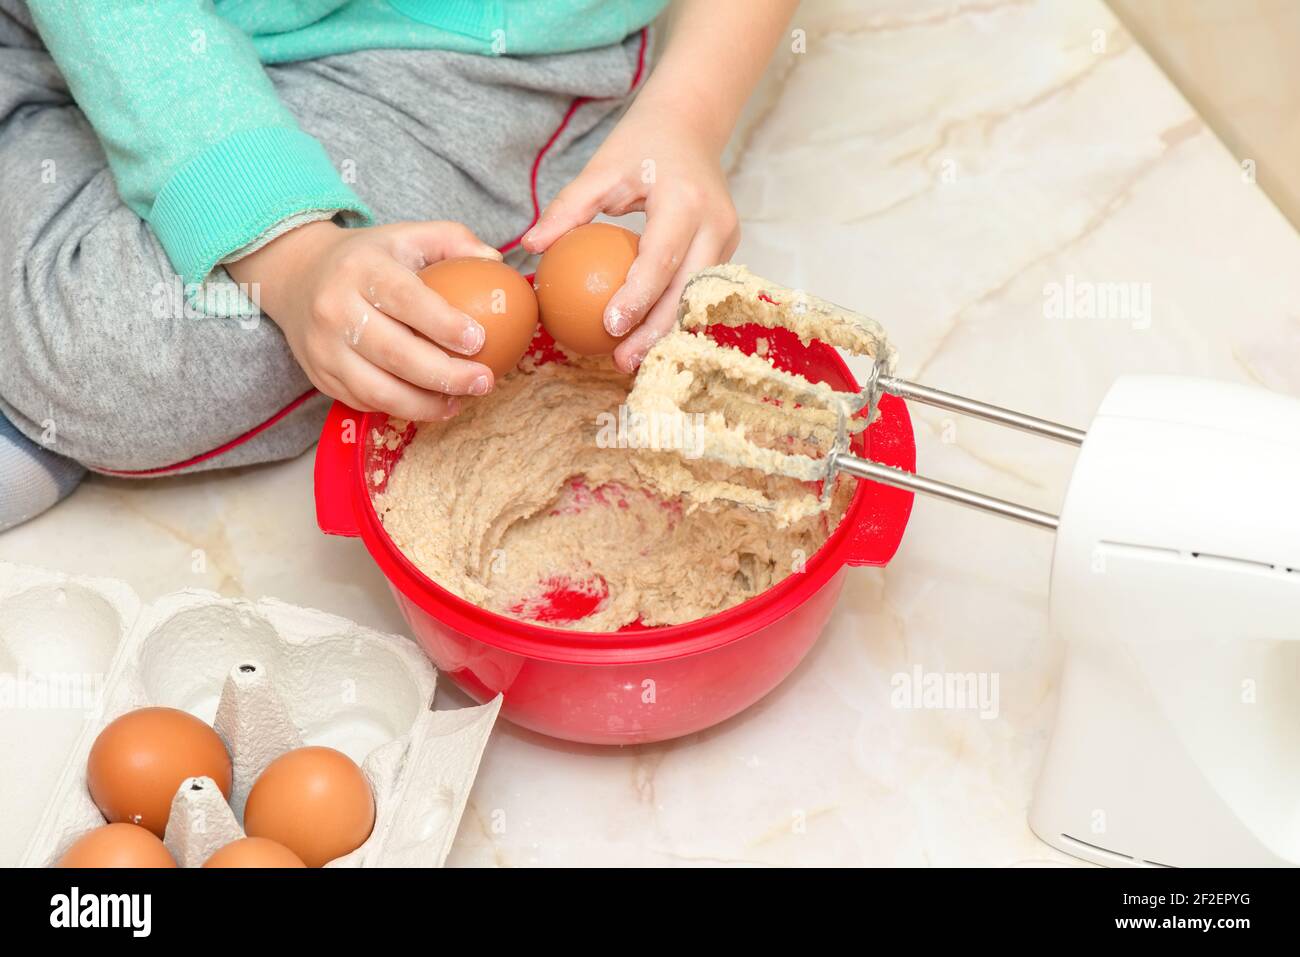 Child prepares dessert in the kitchen, detail Stock Photo